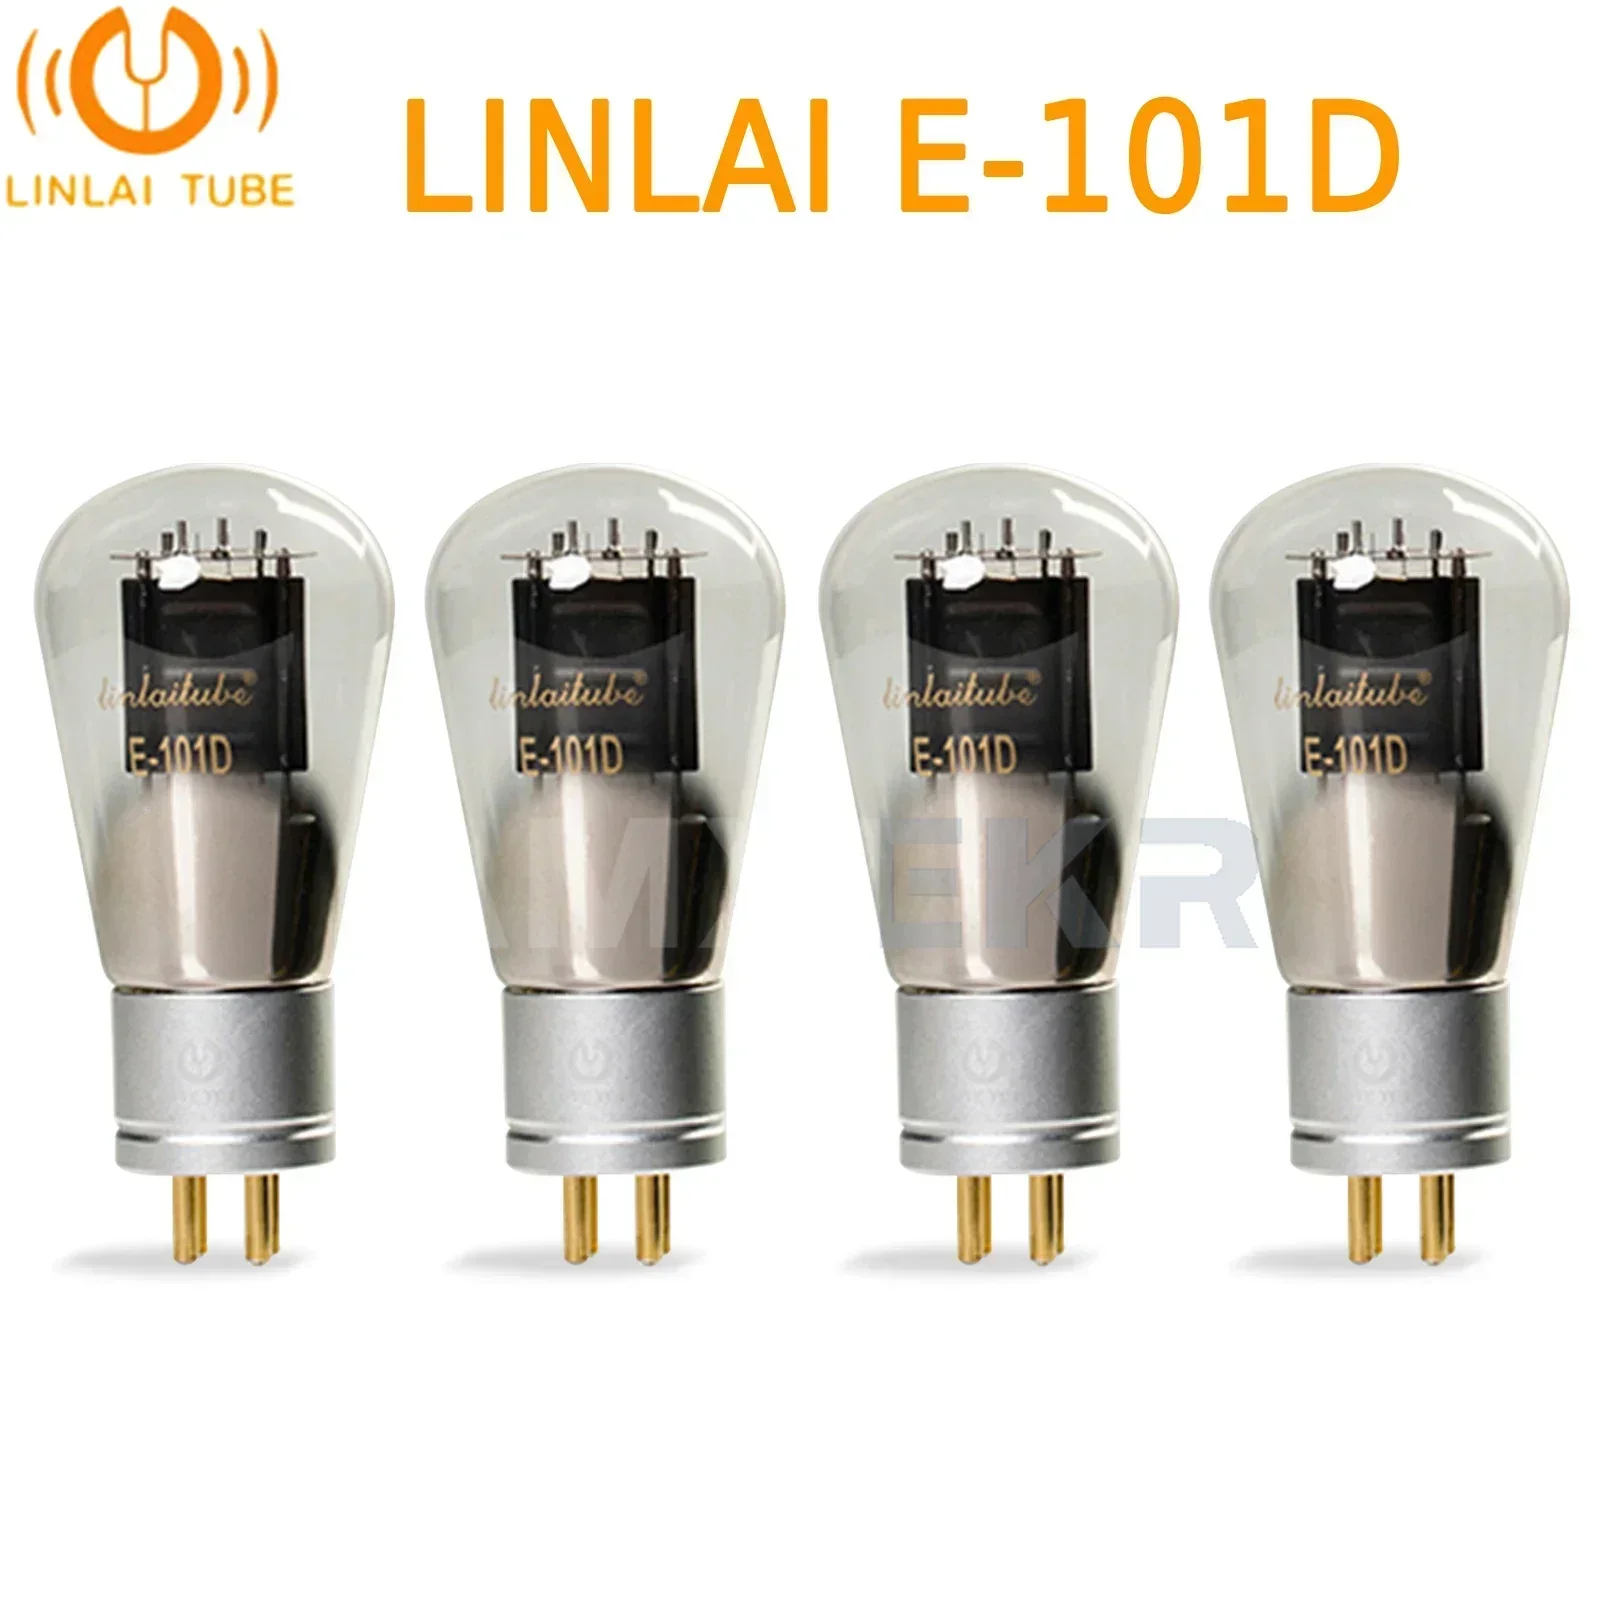 

LINLAI E-101D Vacuum Tube Audio Valve Replaces 101D WE101D Electronic Tube Amplifier HIFI Audio Amplifier Match Quad